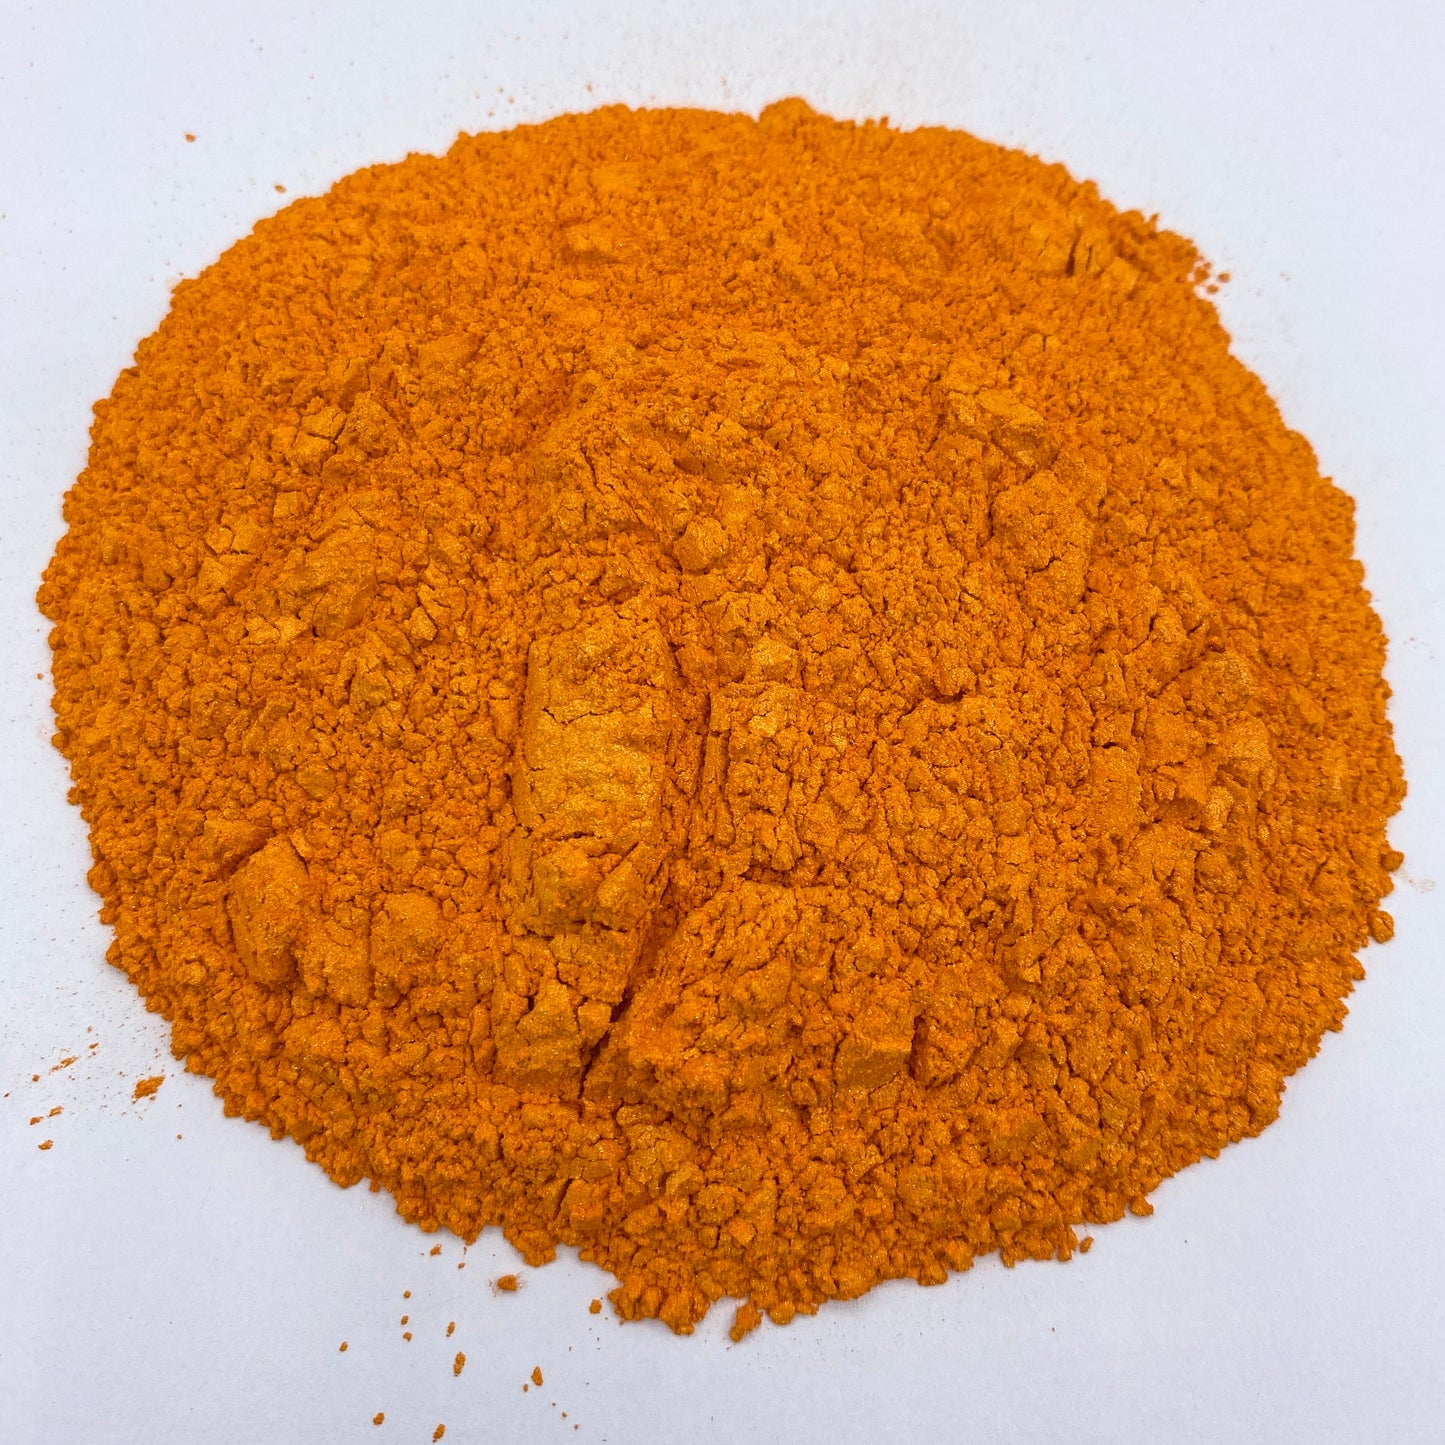 Astro Dust Tangerine Color Pigment - Patrick Adair Supplies